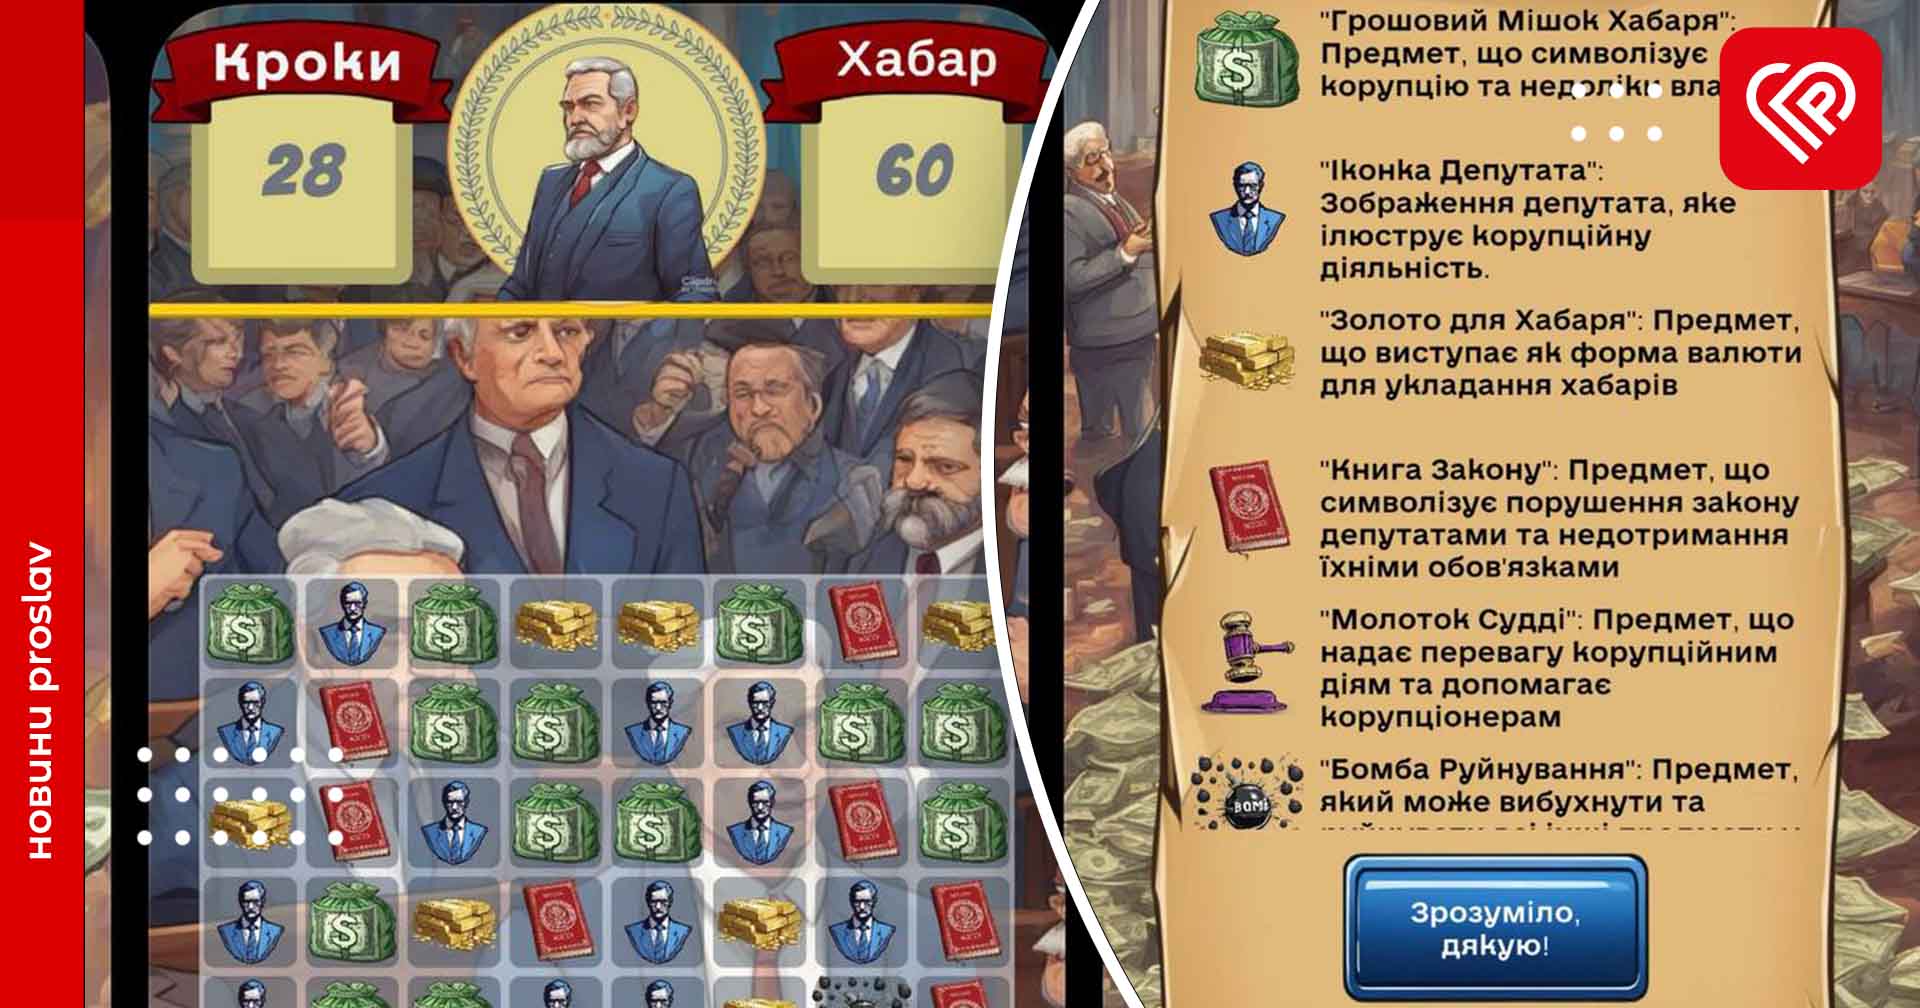 Мобільна гра «Хабар» взяла за основу скандали в Україні: чиновник має зробити вибір між справедливістю та корупцією